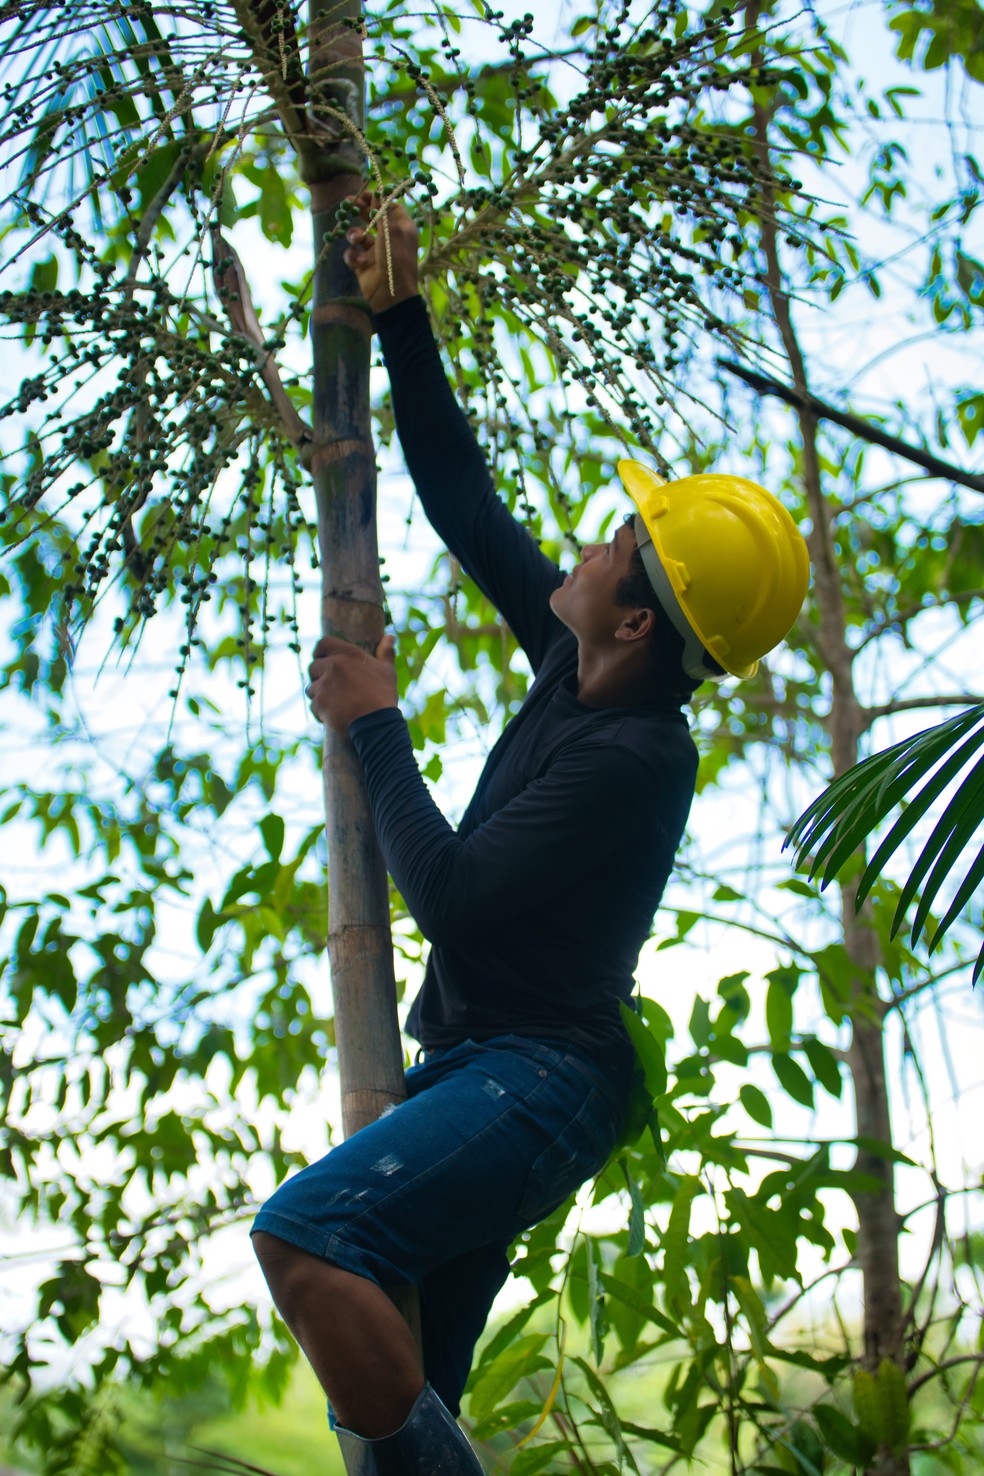 AmazonBai reúne 144 cooperados na região do Bailique — Foto: Divulgação/AmazonBai